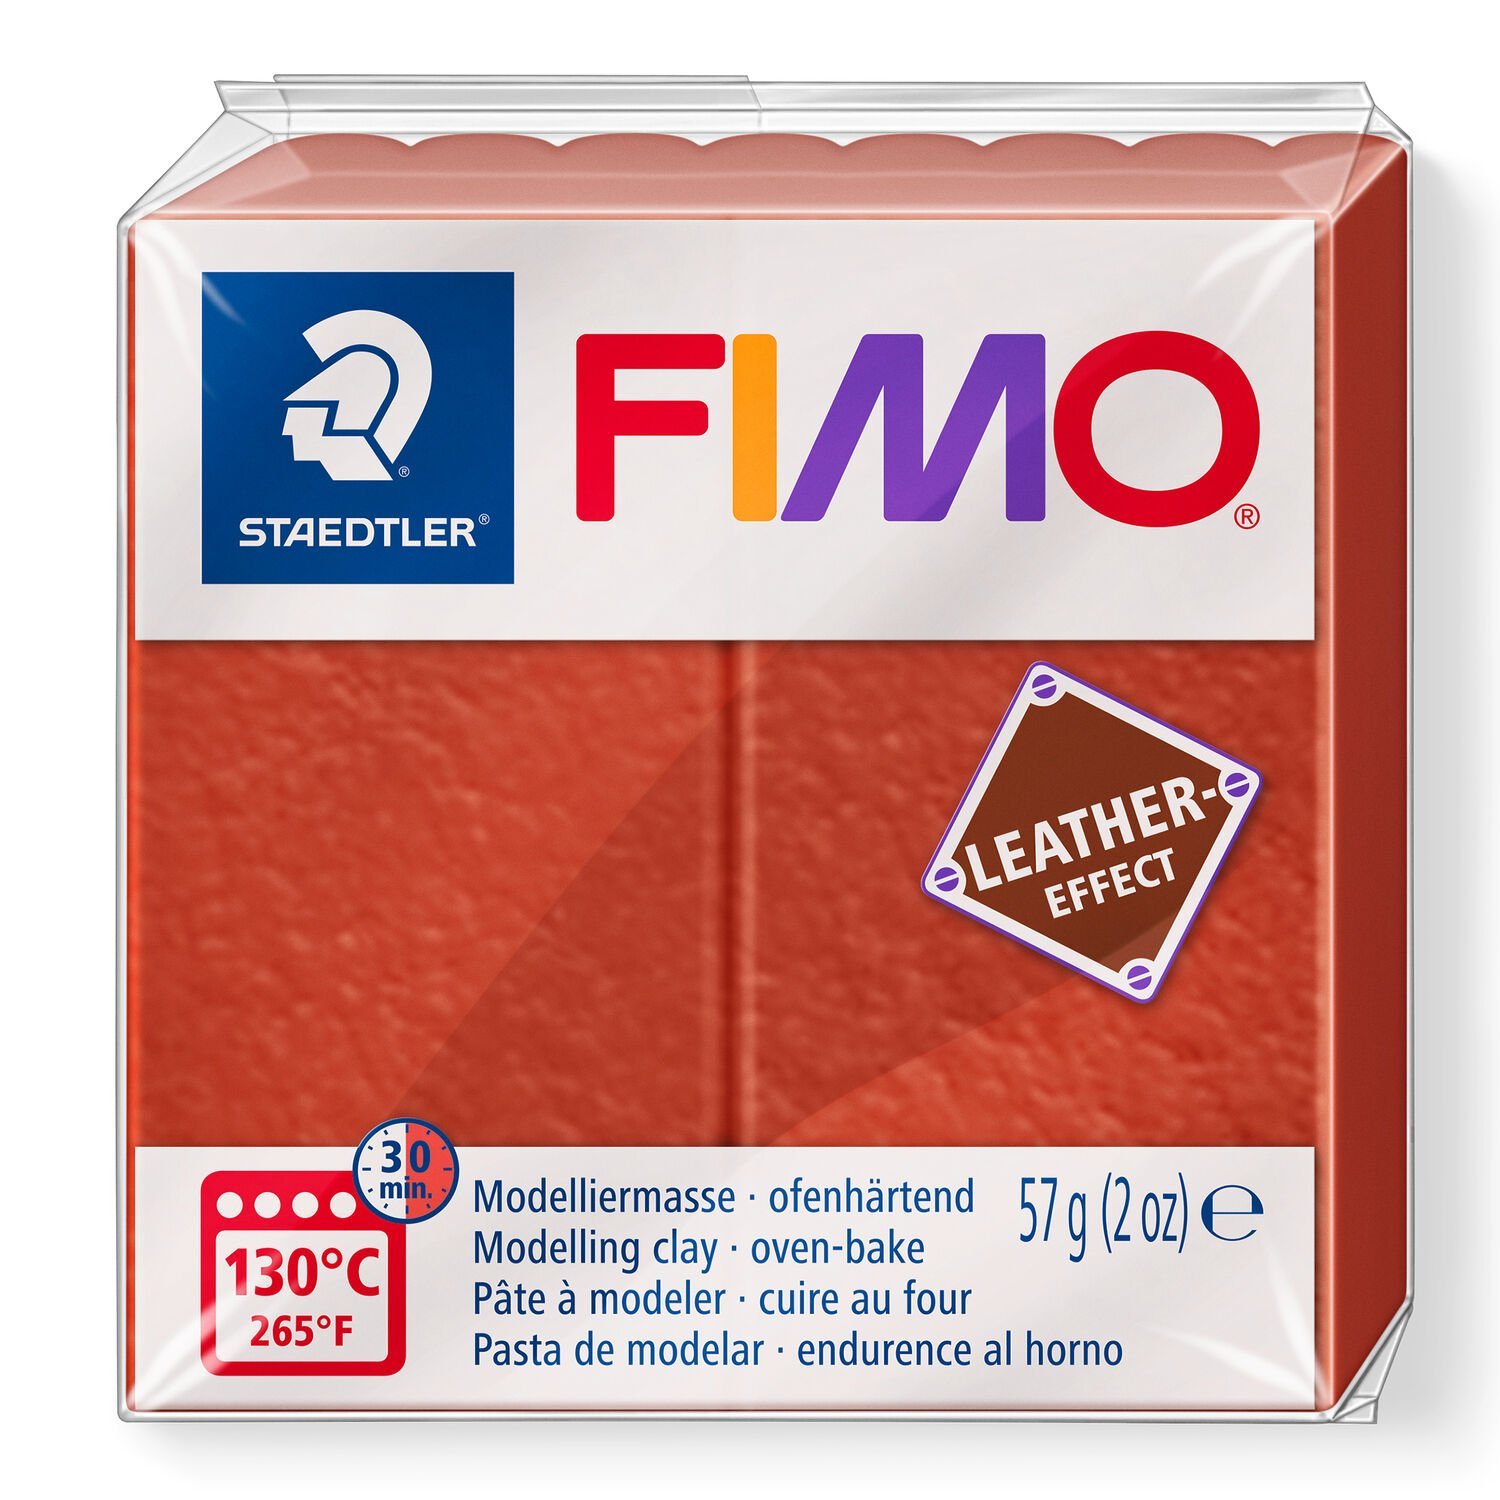 FIMO® leather-effect 8010 - Argila de polímero de endurecimento ao forno